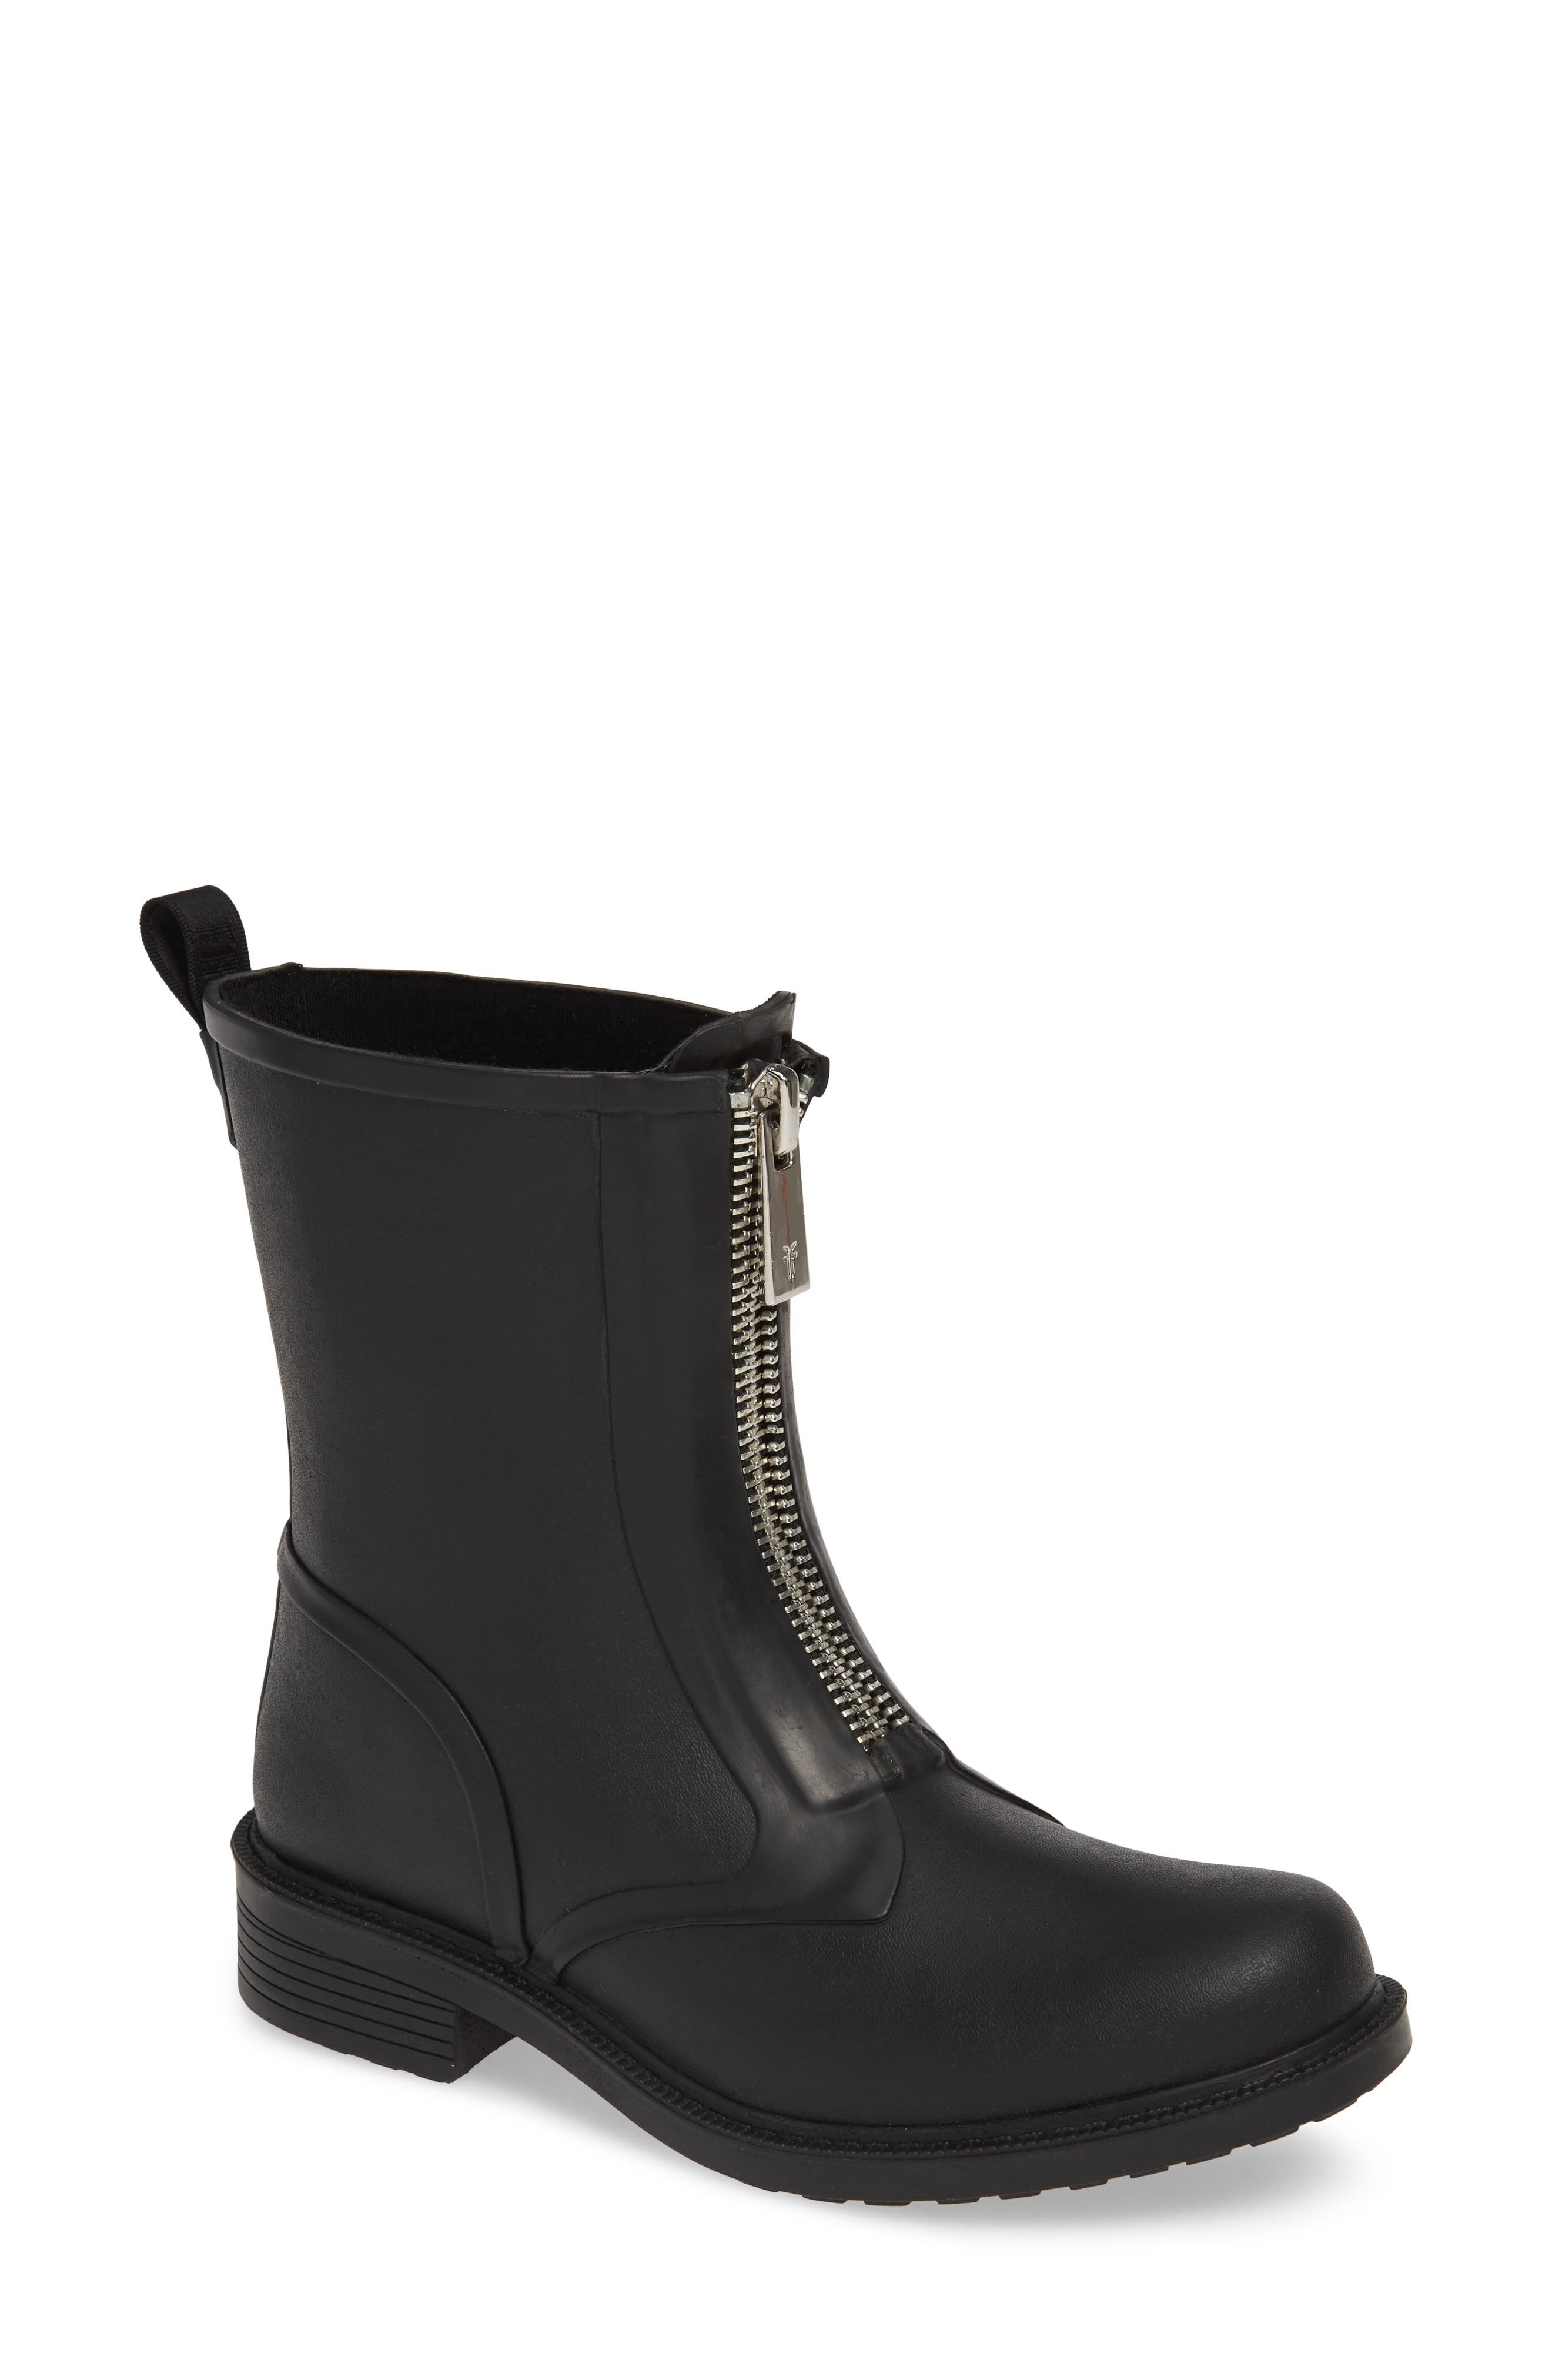 frye waterproof boots